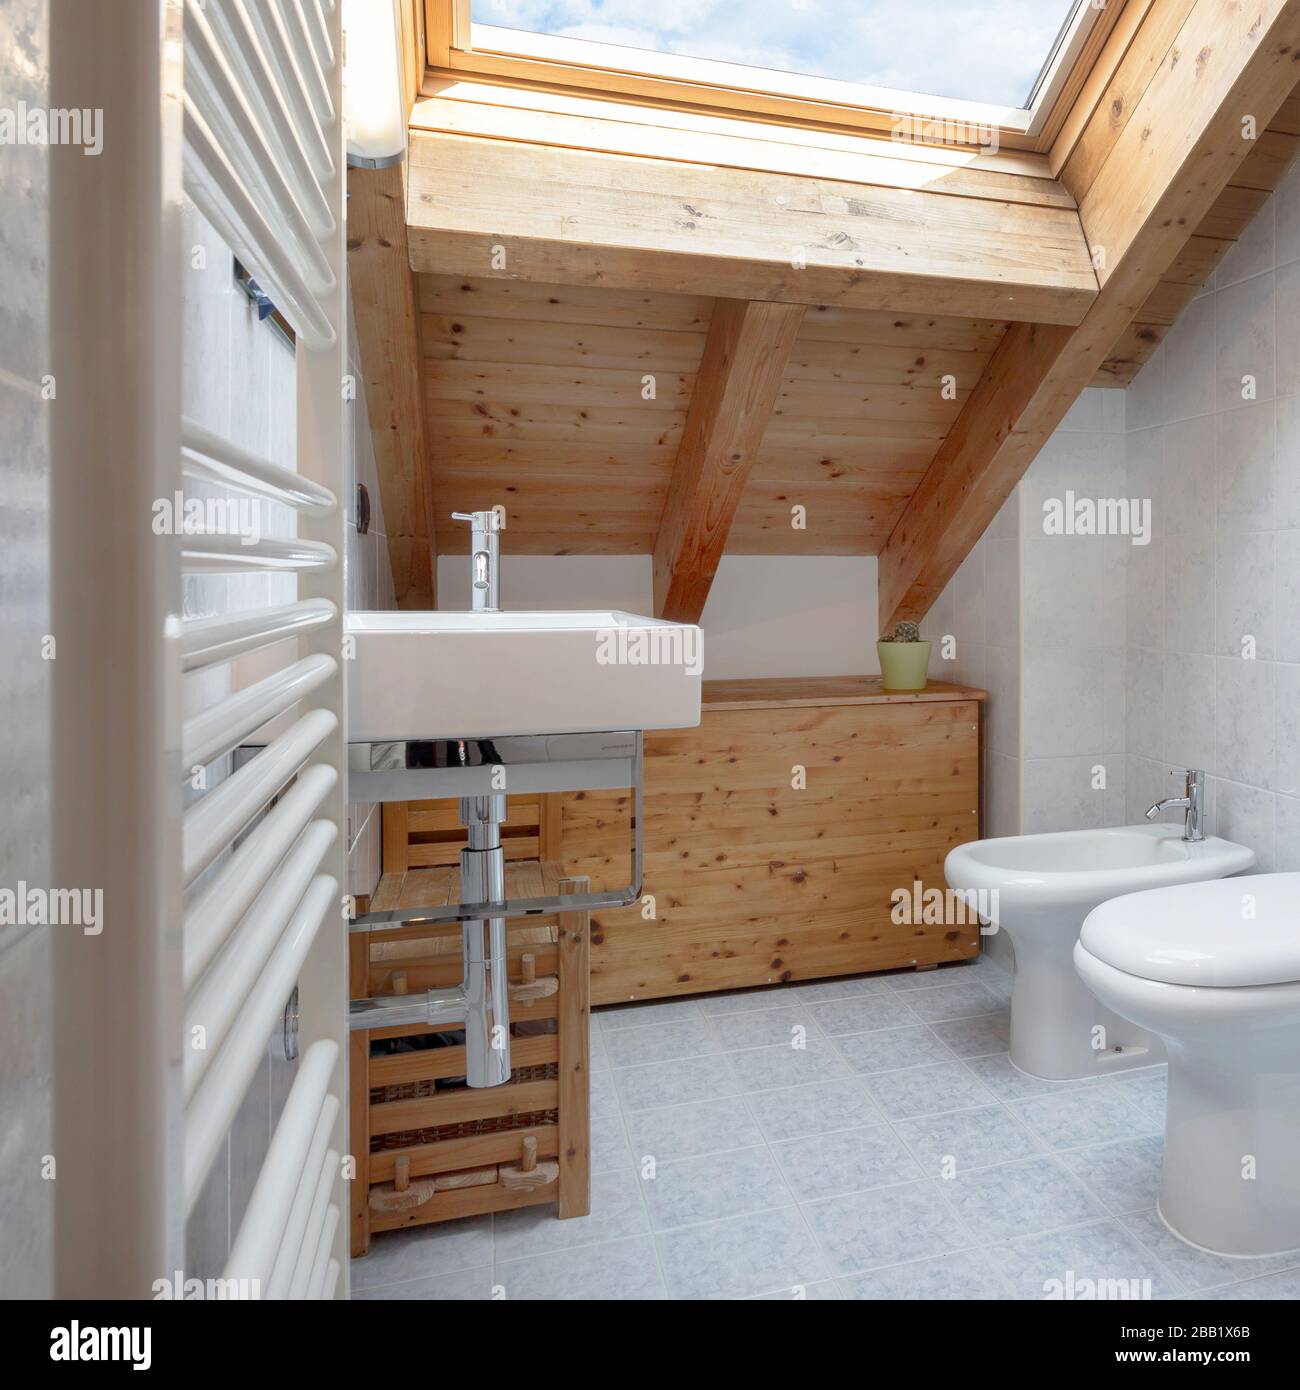 Praktisches und gemütliches Badezimmer mit Handtuchwärmer, toilette, Schrank und Waschbecken. Dach mit freiliegenden Holzbalken und Himmelfenster. Stockfoto